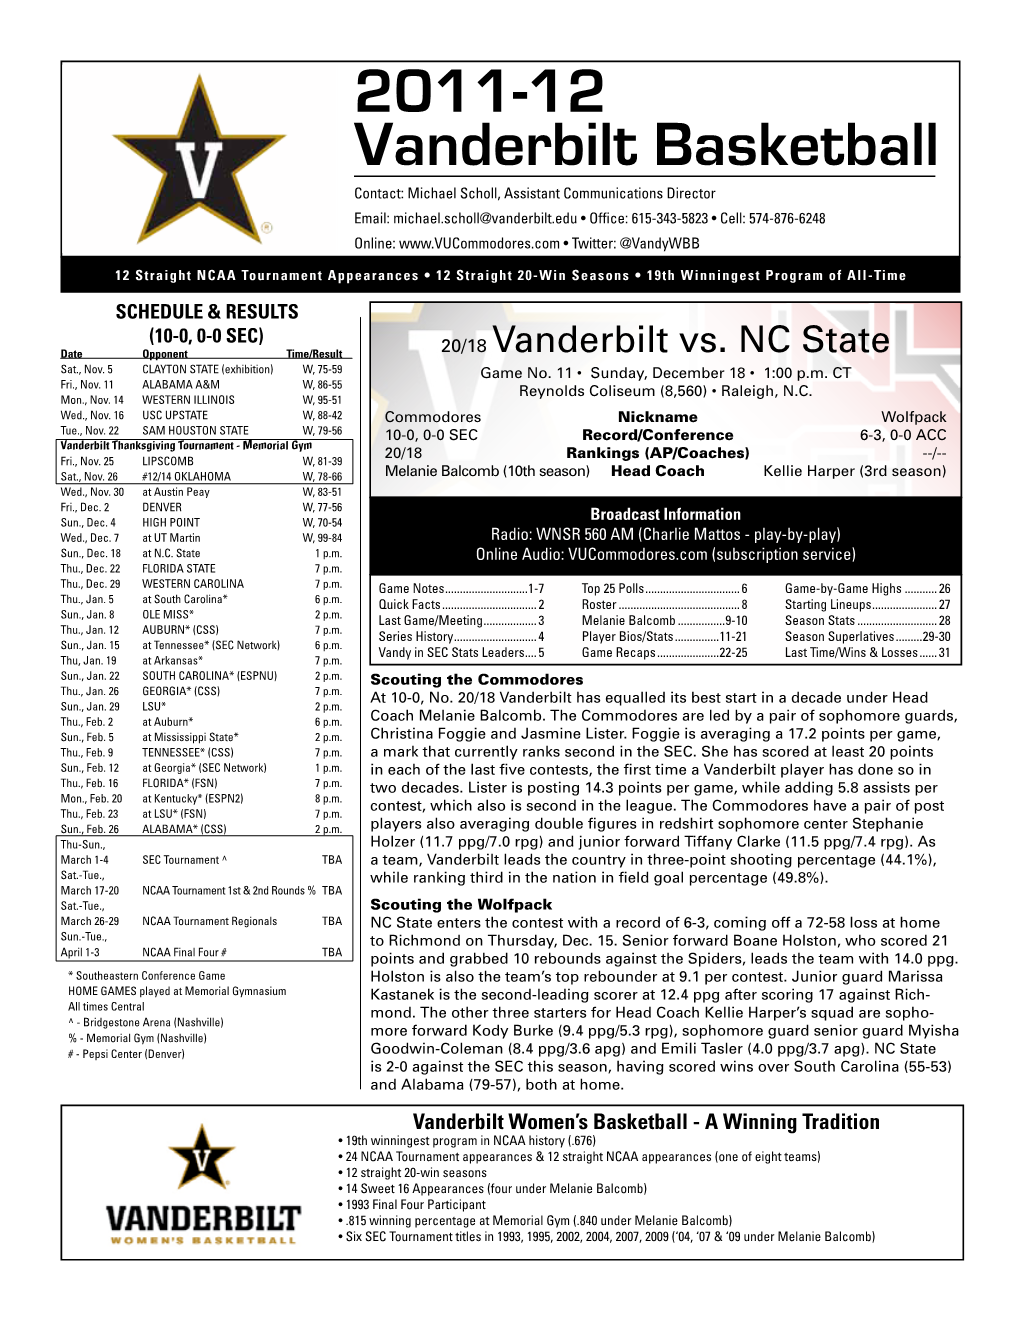 2011-12 Vanderbilt Basketball